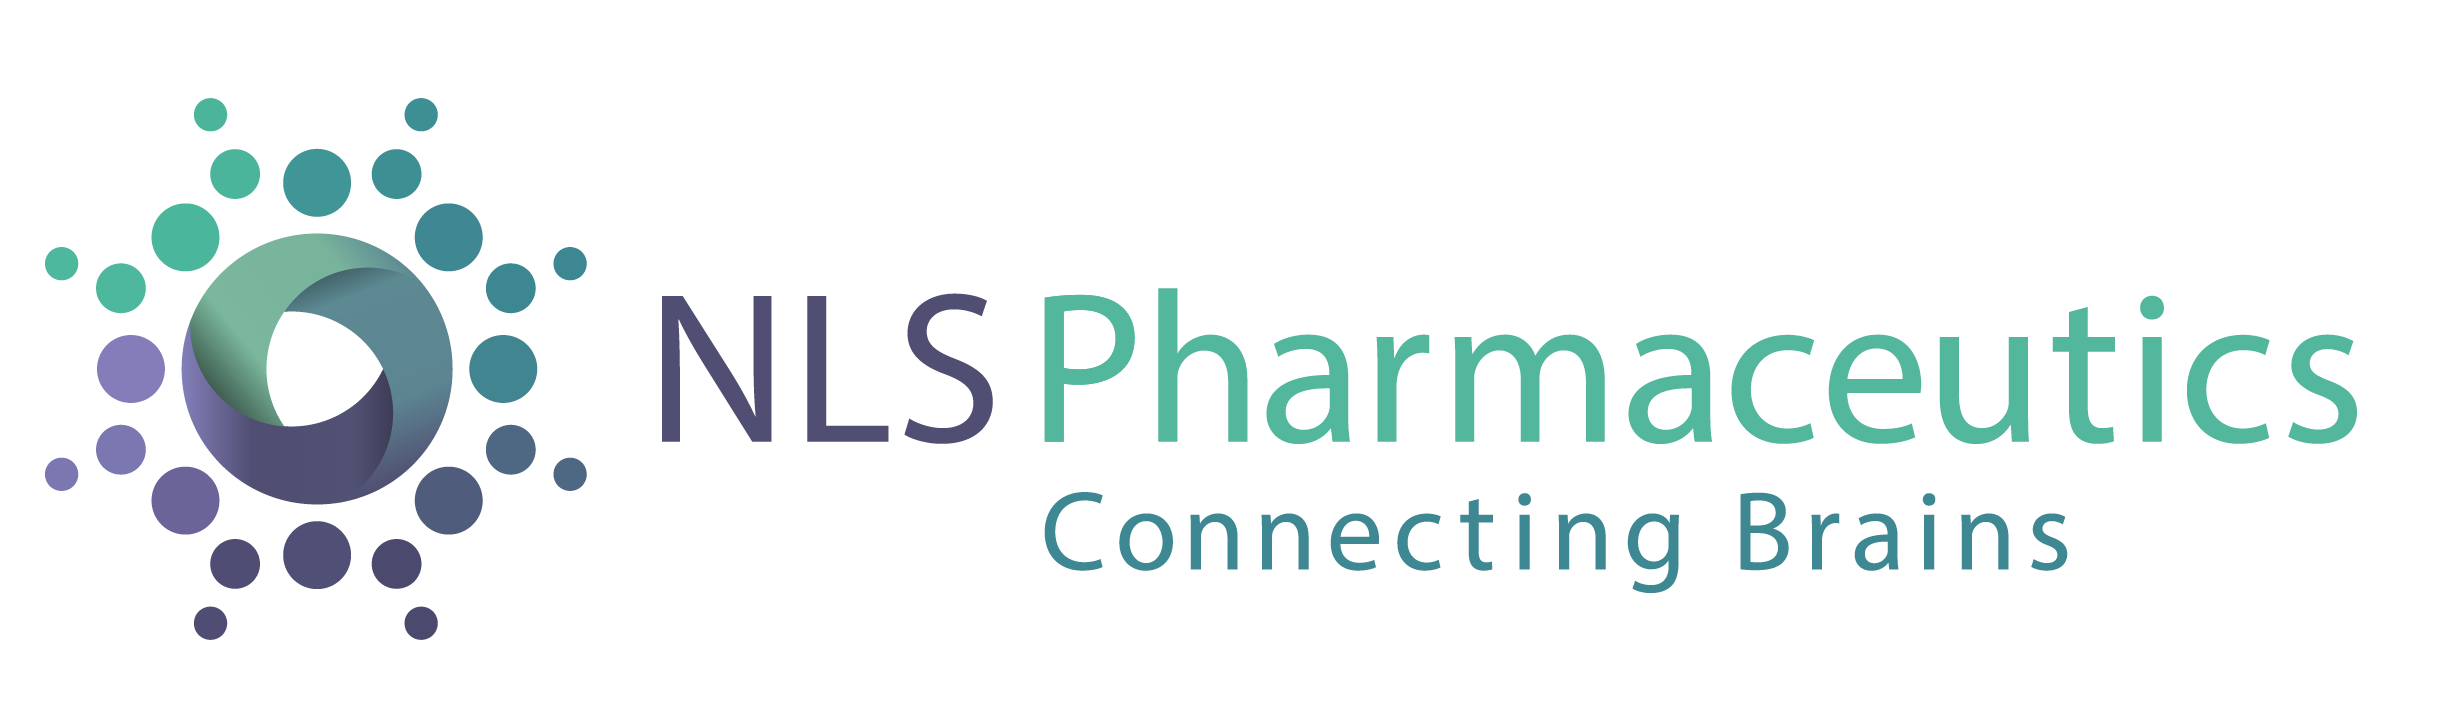 NLS Pharmaceutics AG, Thursday, December 22, 2022, Press release picture